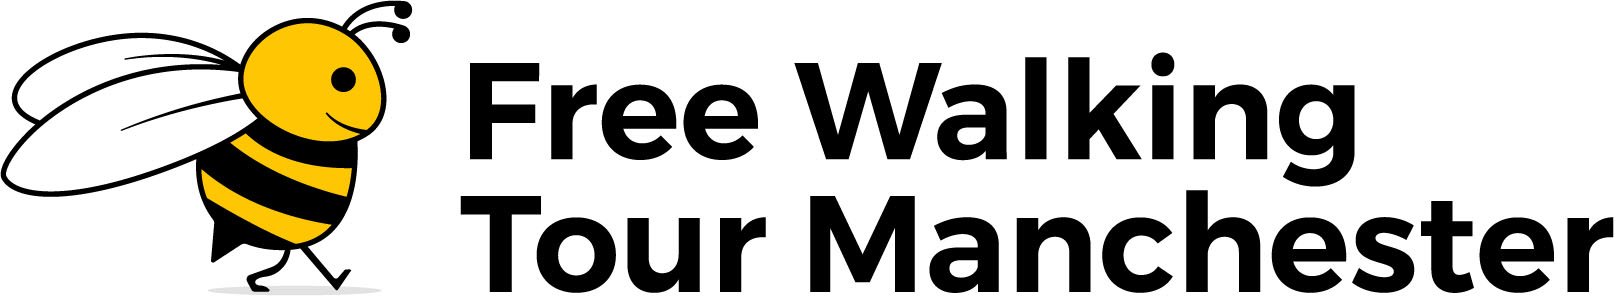 Free Walking Tour Manchester Logo